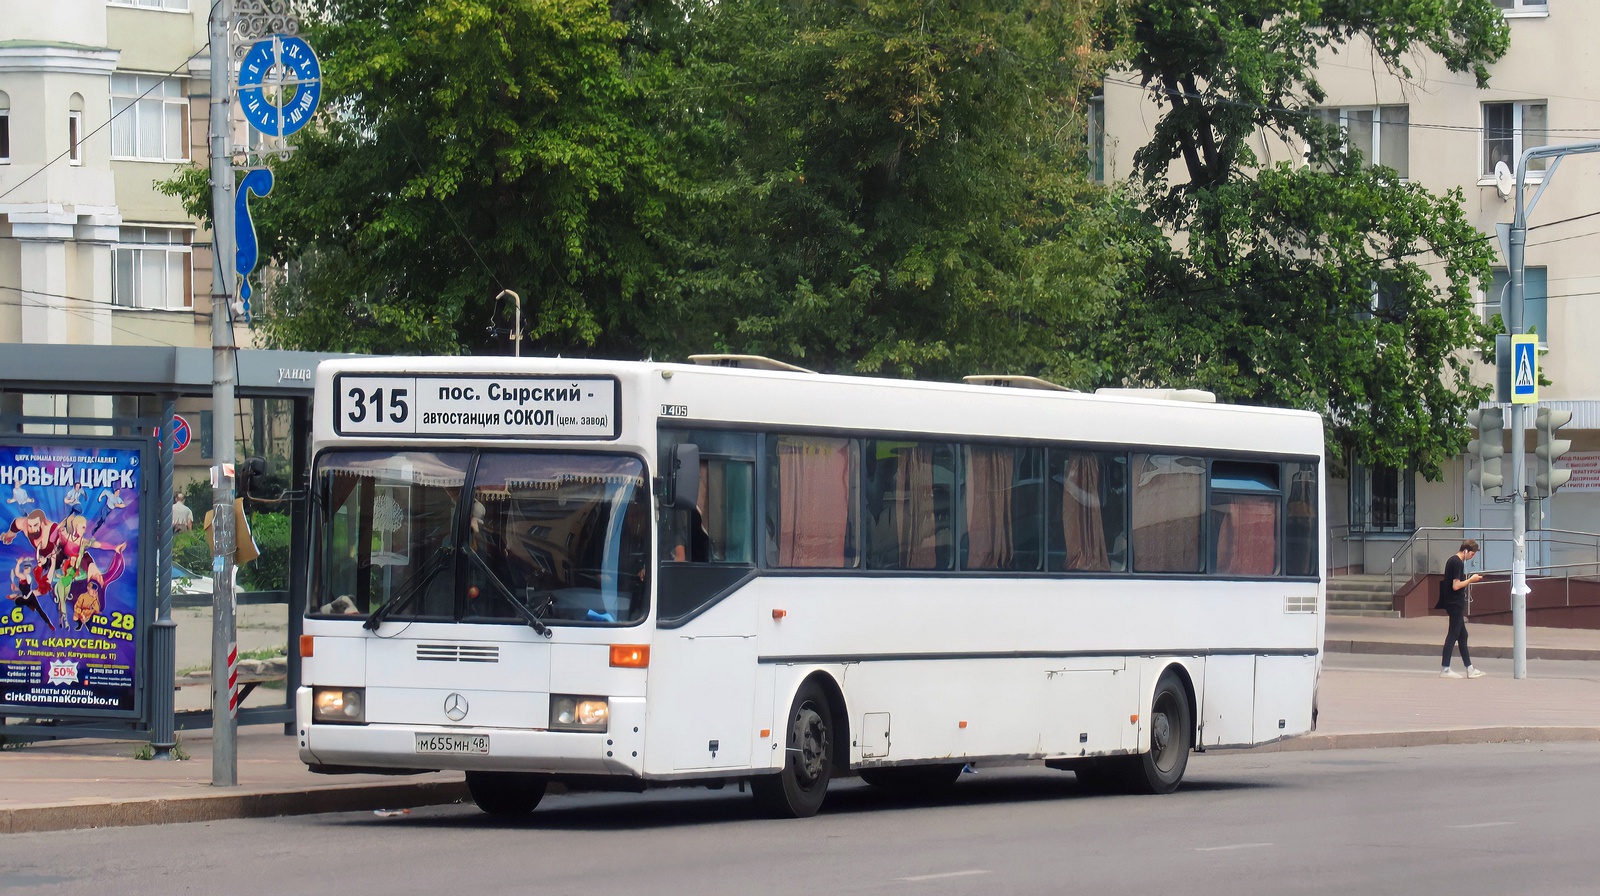 Lipetsk region, Mercedes-Benz O405 Nr. М 655 МН 48